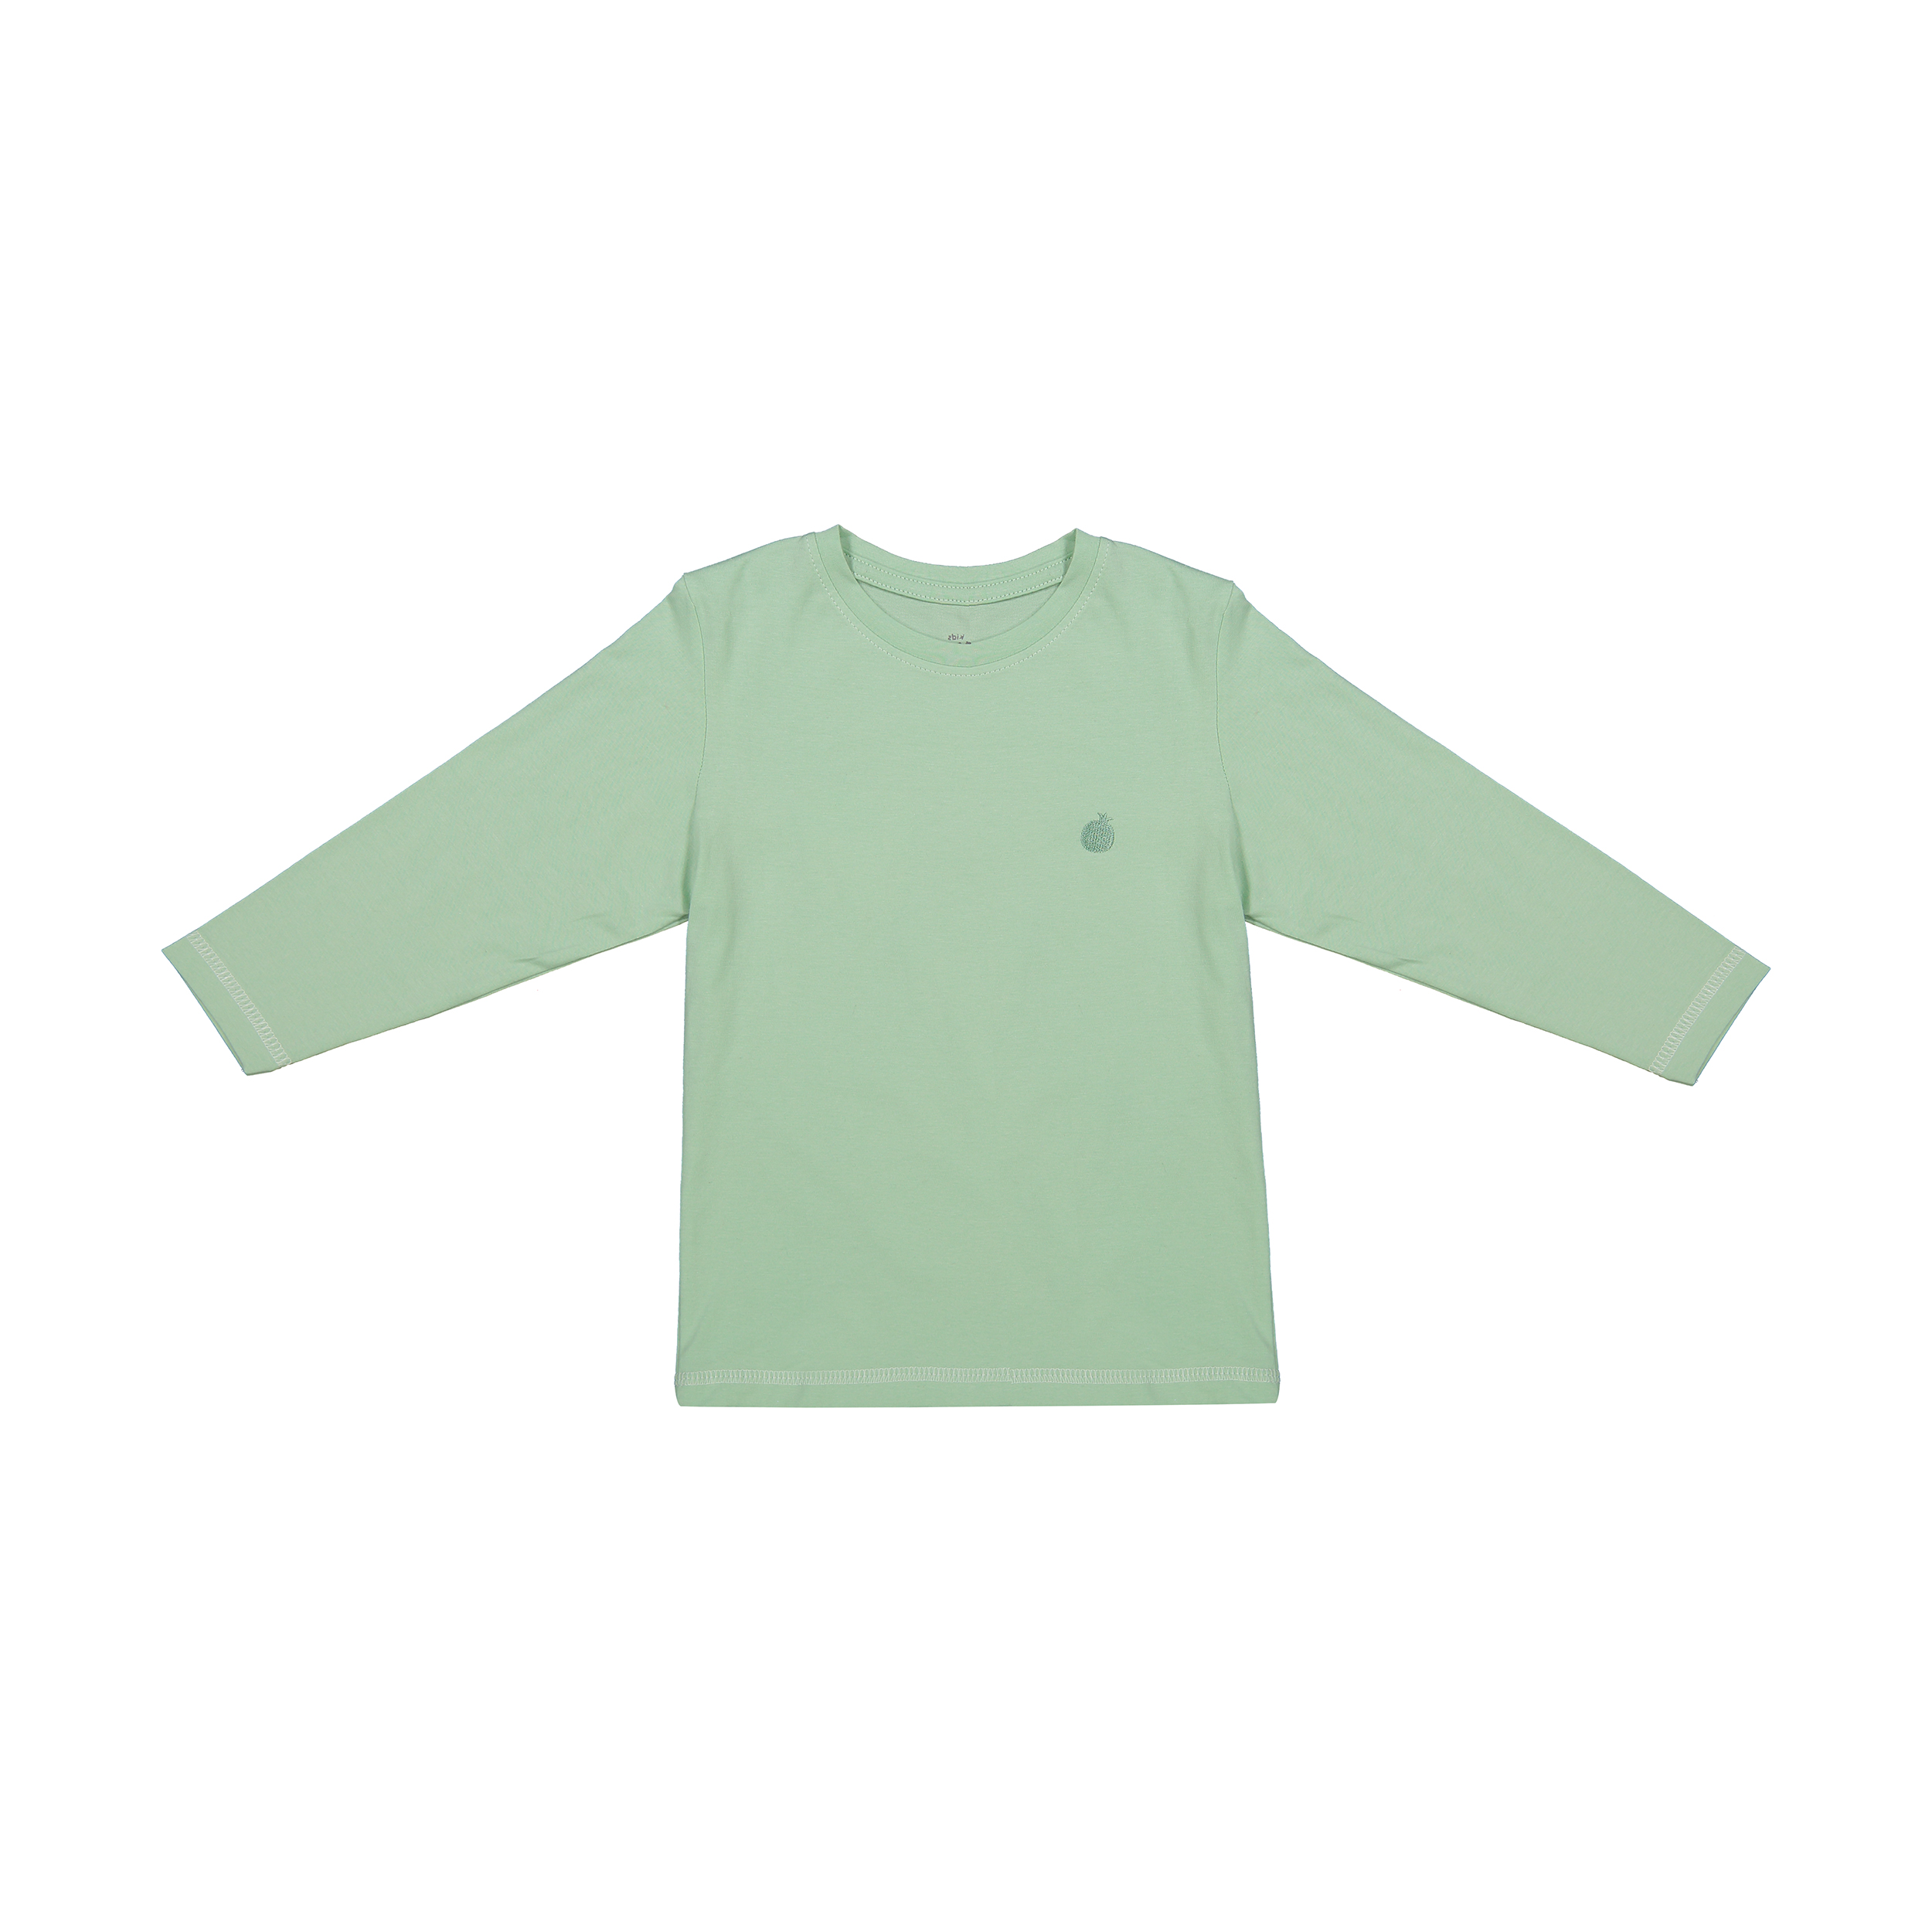 تی شرت بچگانه ناربن مدل 1521161-41 - سبز روشن - 1